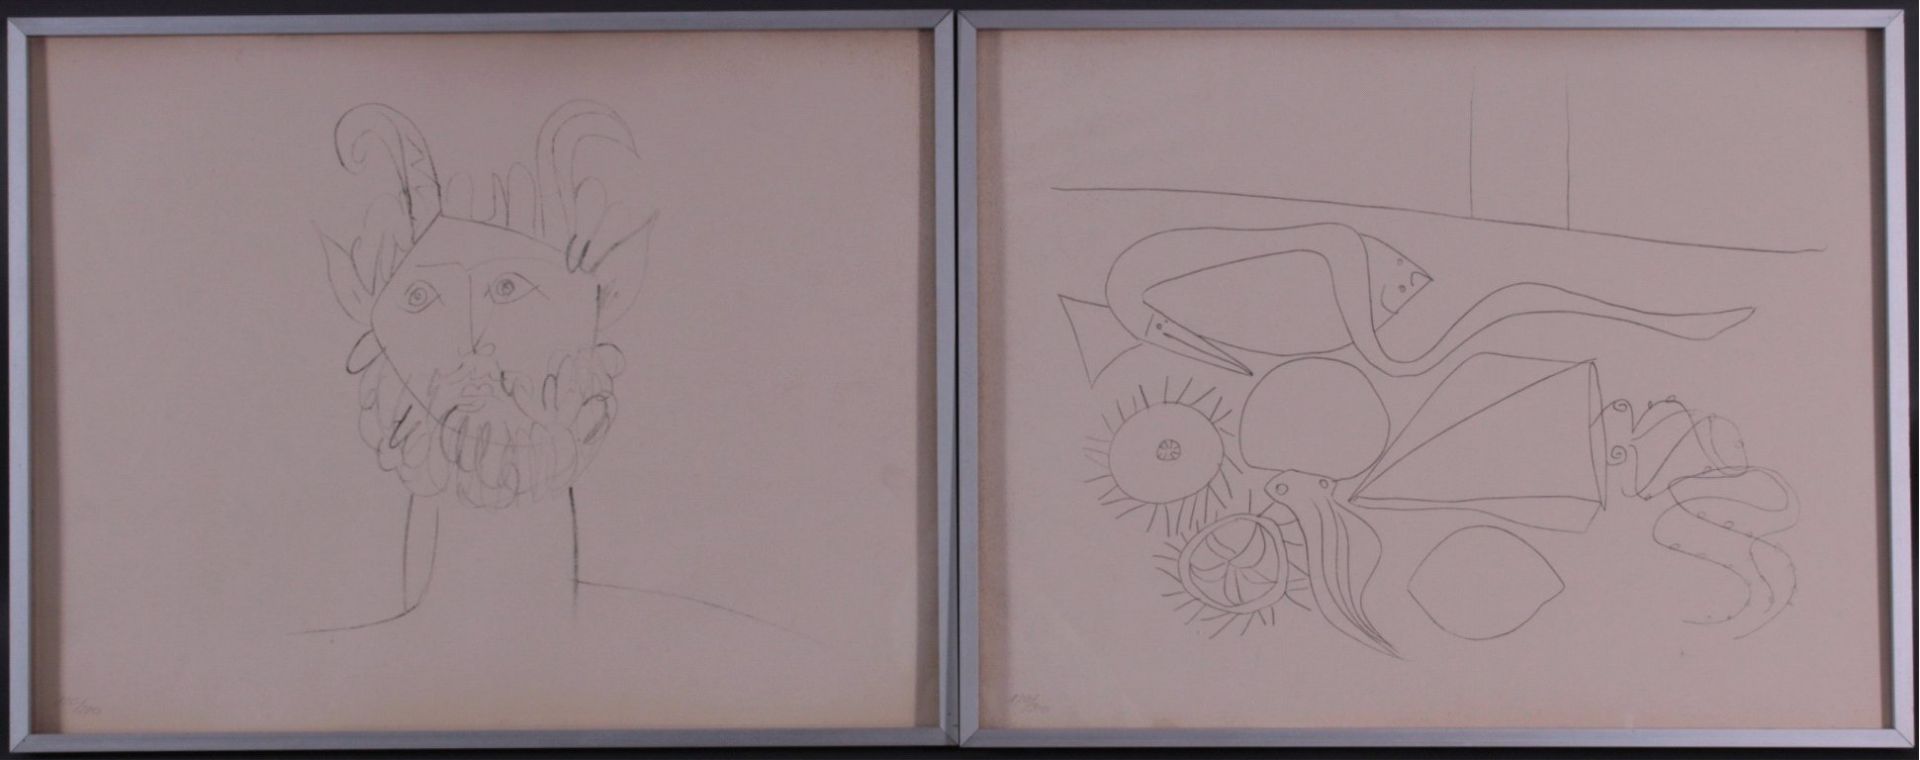 4 Picasso Reproduktionen vom Daniel Jacomet,Verso druckgraphisch bezeichnet "Les Dessins D` - Bild 3 aus 3